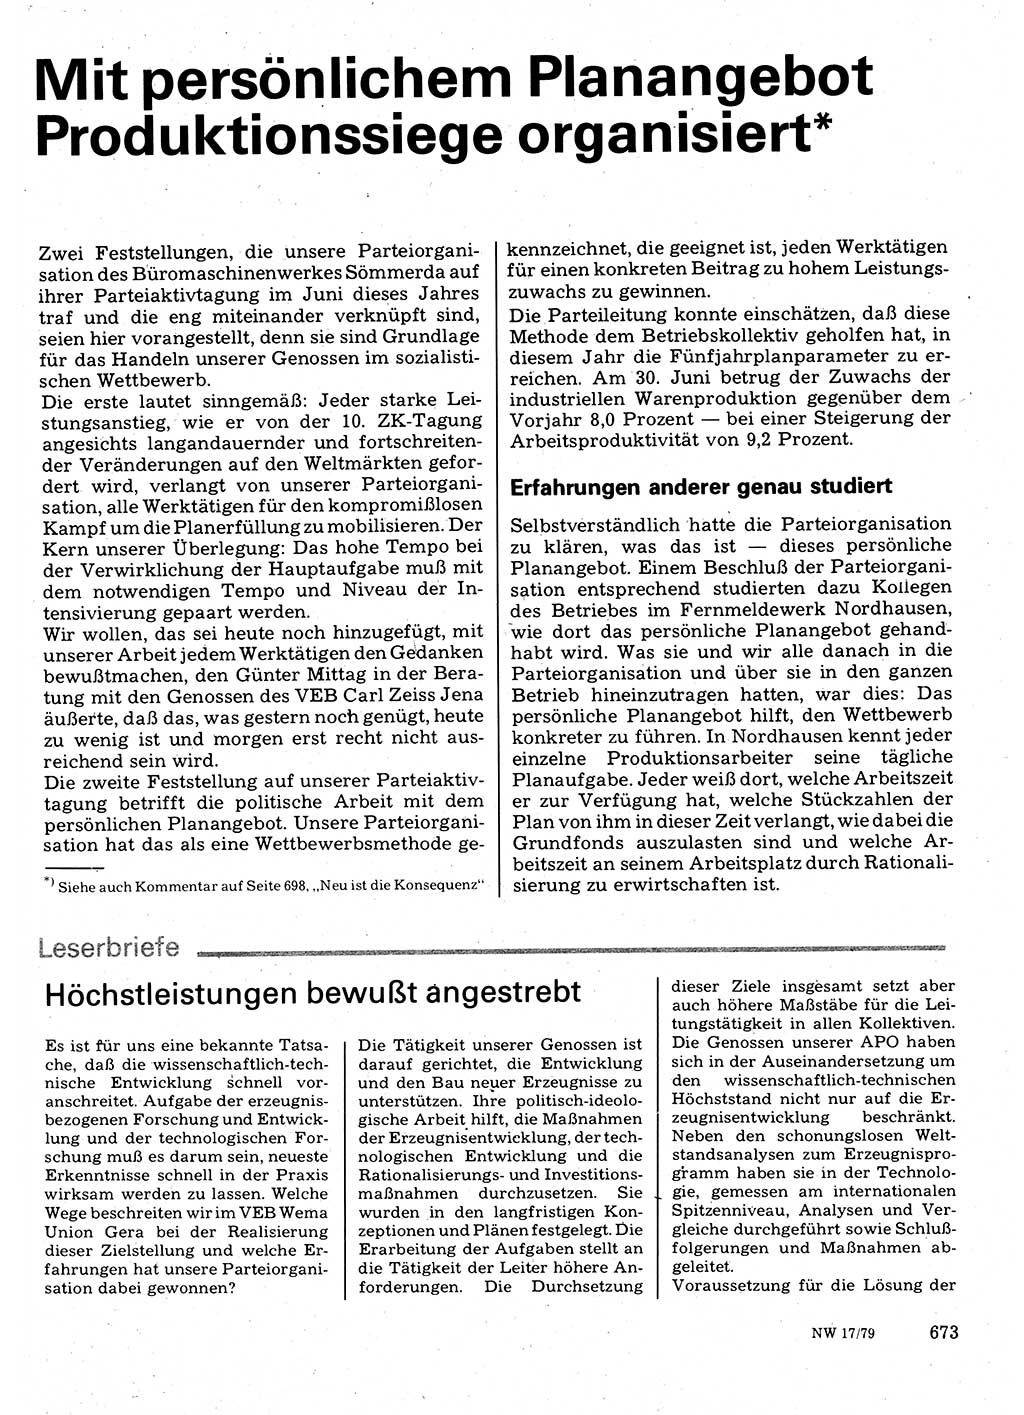 Neuer Weg (NW), Organ des Zentralkomitees (ZK) der SED (Sozialistische Einheitspartei Deutschlands) für Fragen des Parteilebens, 34. Jahrgang [Deutsche Demokratische Republik (DDR)] 1979, Seite 673 (NW ZK SED DDR 1979, S. 673)